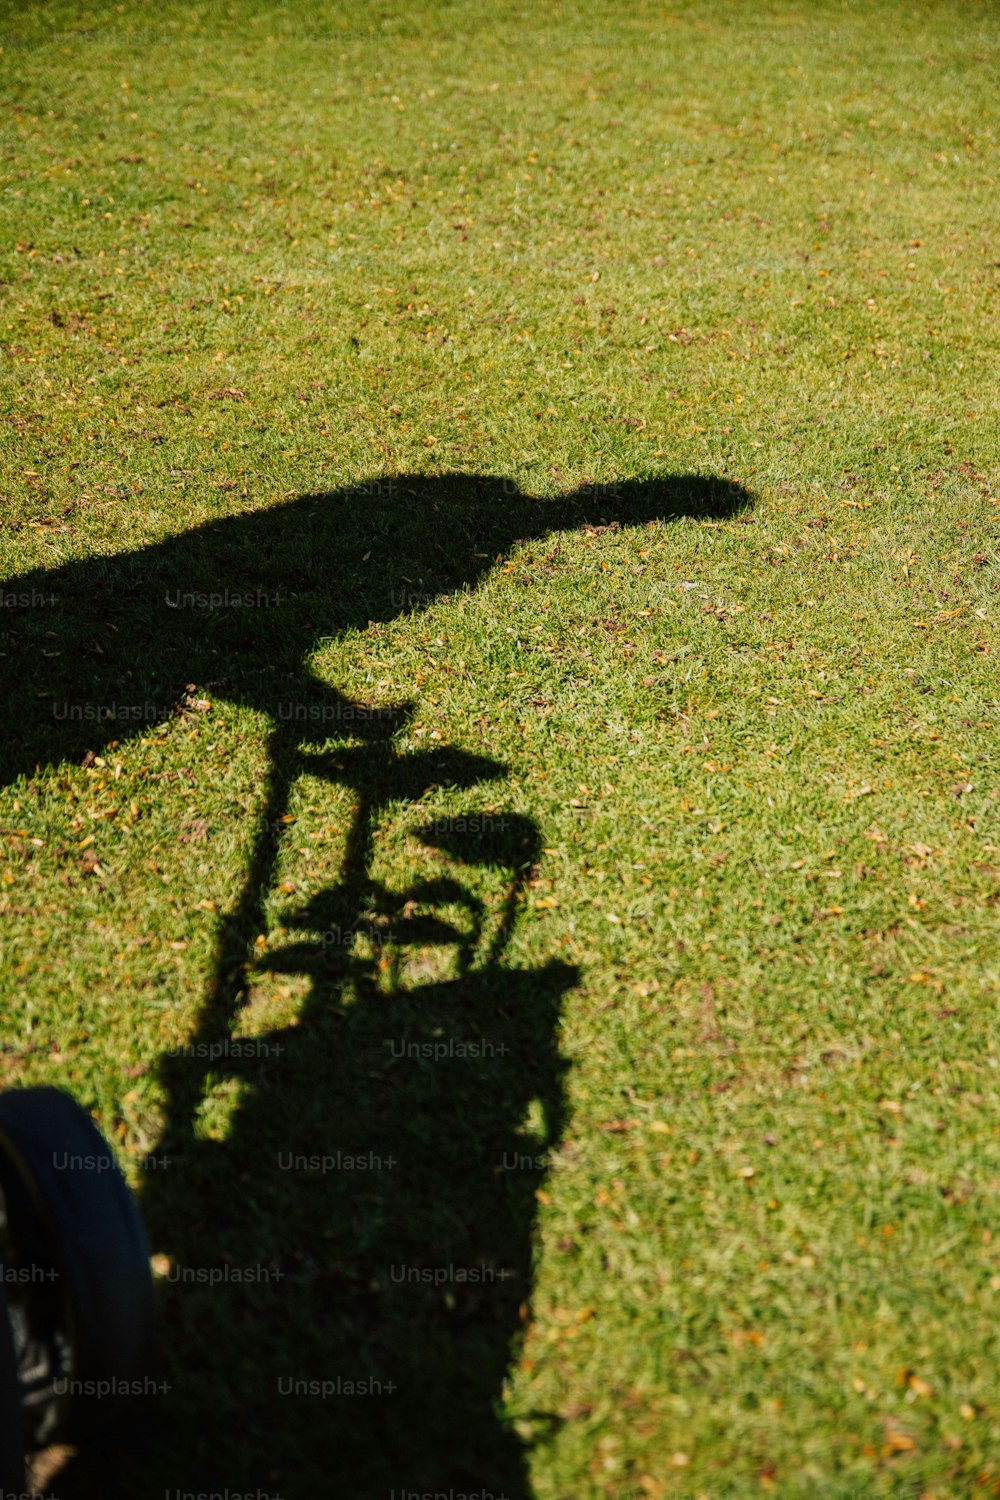 uma sombra de uma pessoa andando de bicicleta na grama